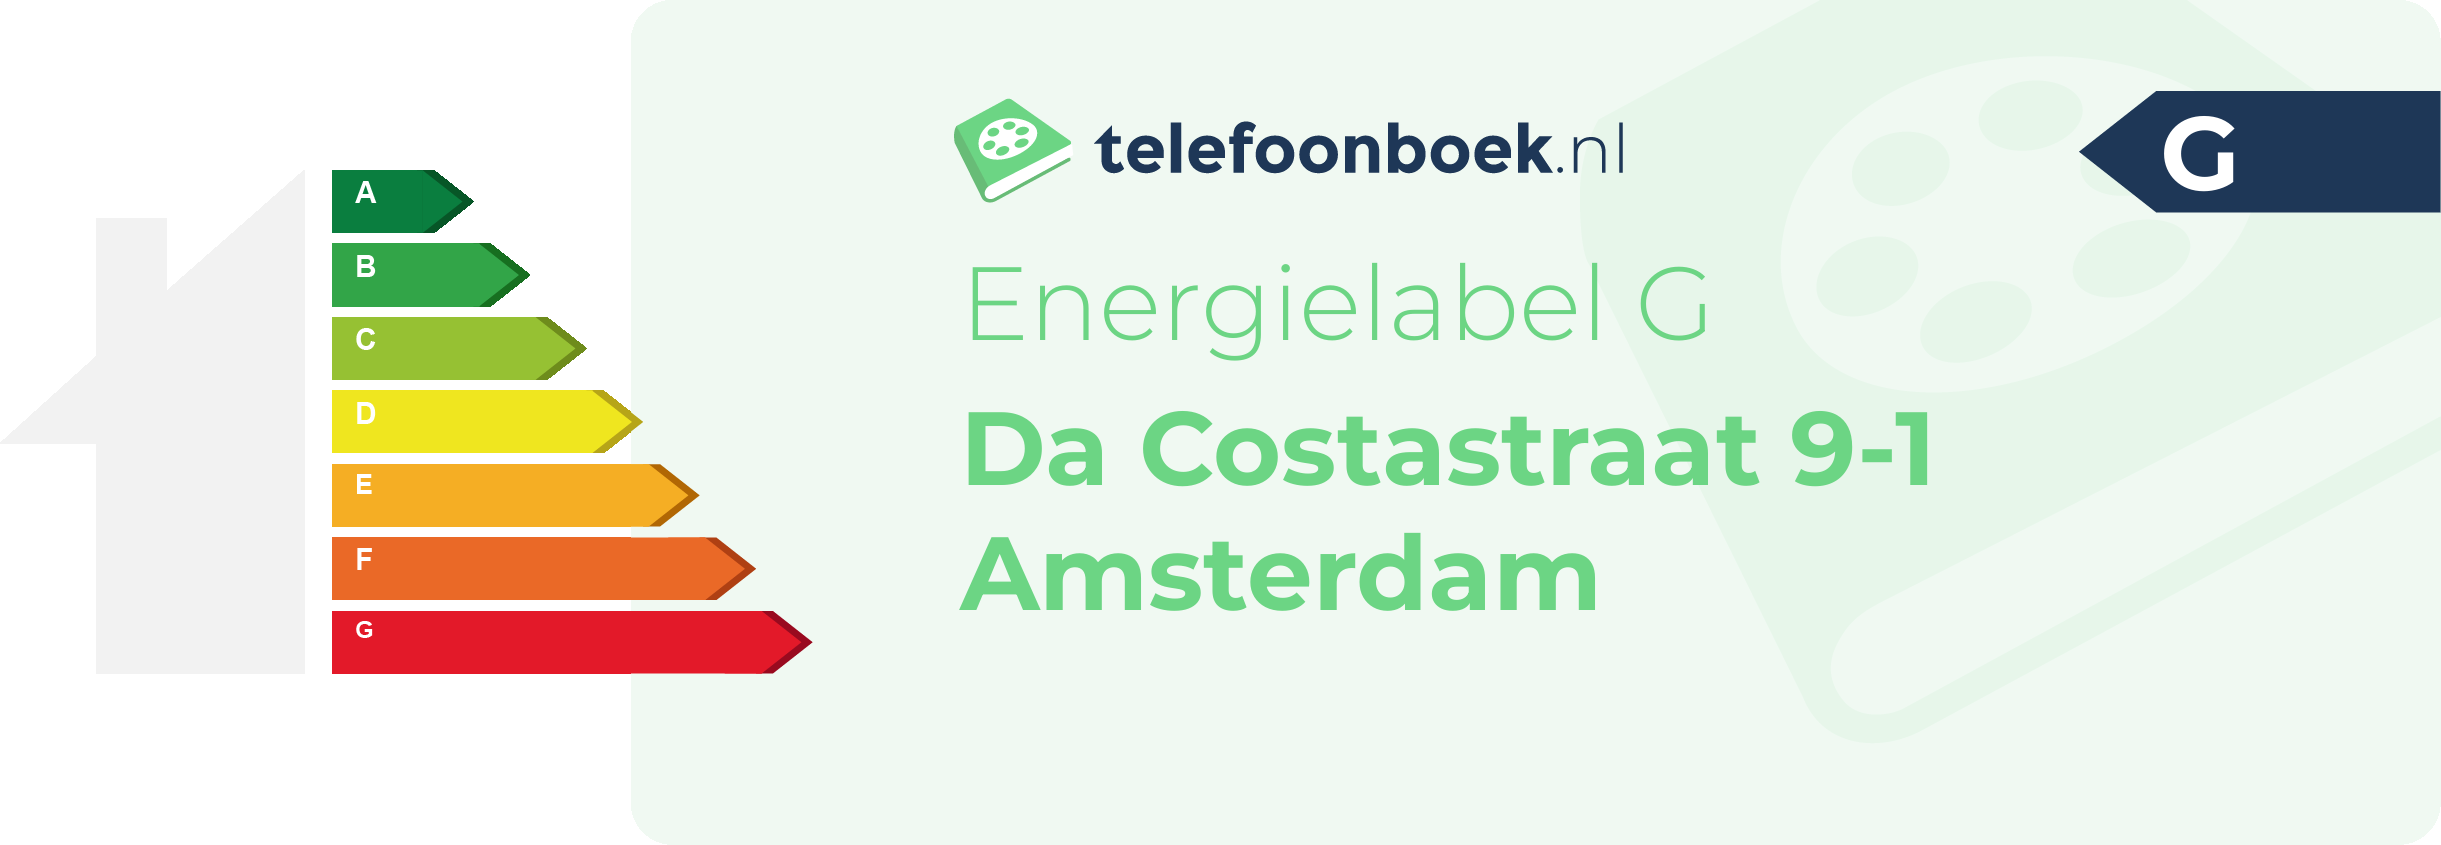 Energielabel Da Costastraat 9-1 Amsterdam